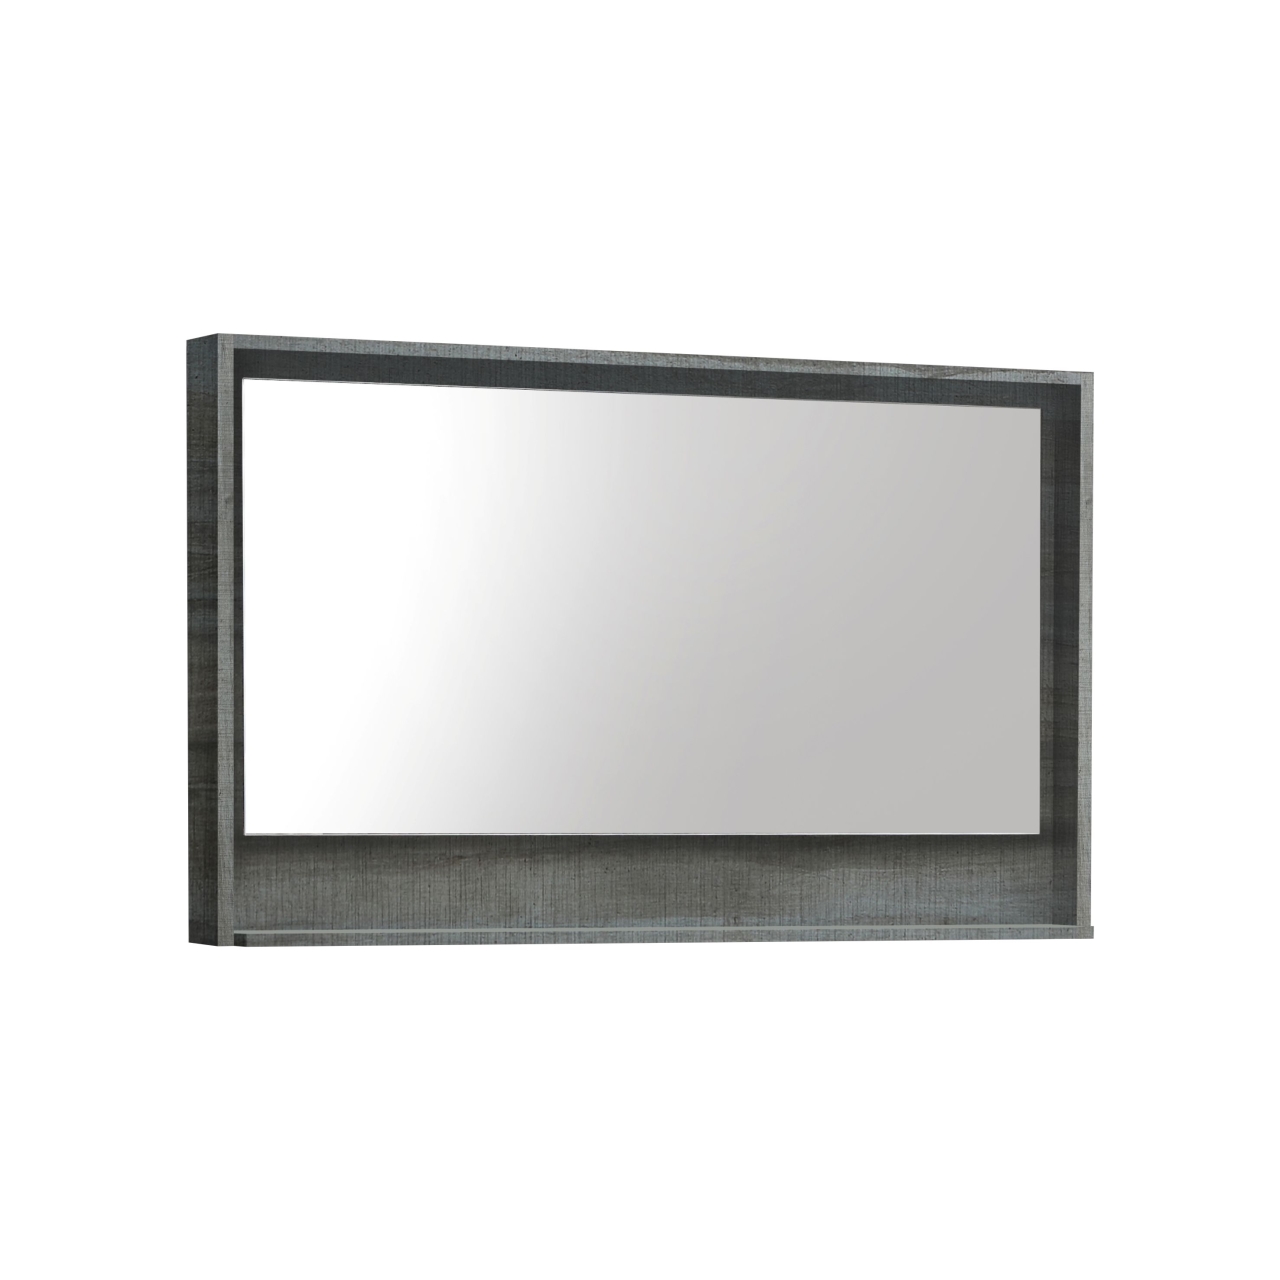 48" Wide Mirror w/ Shelf - Ocean Gray